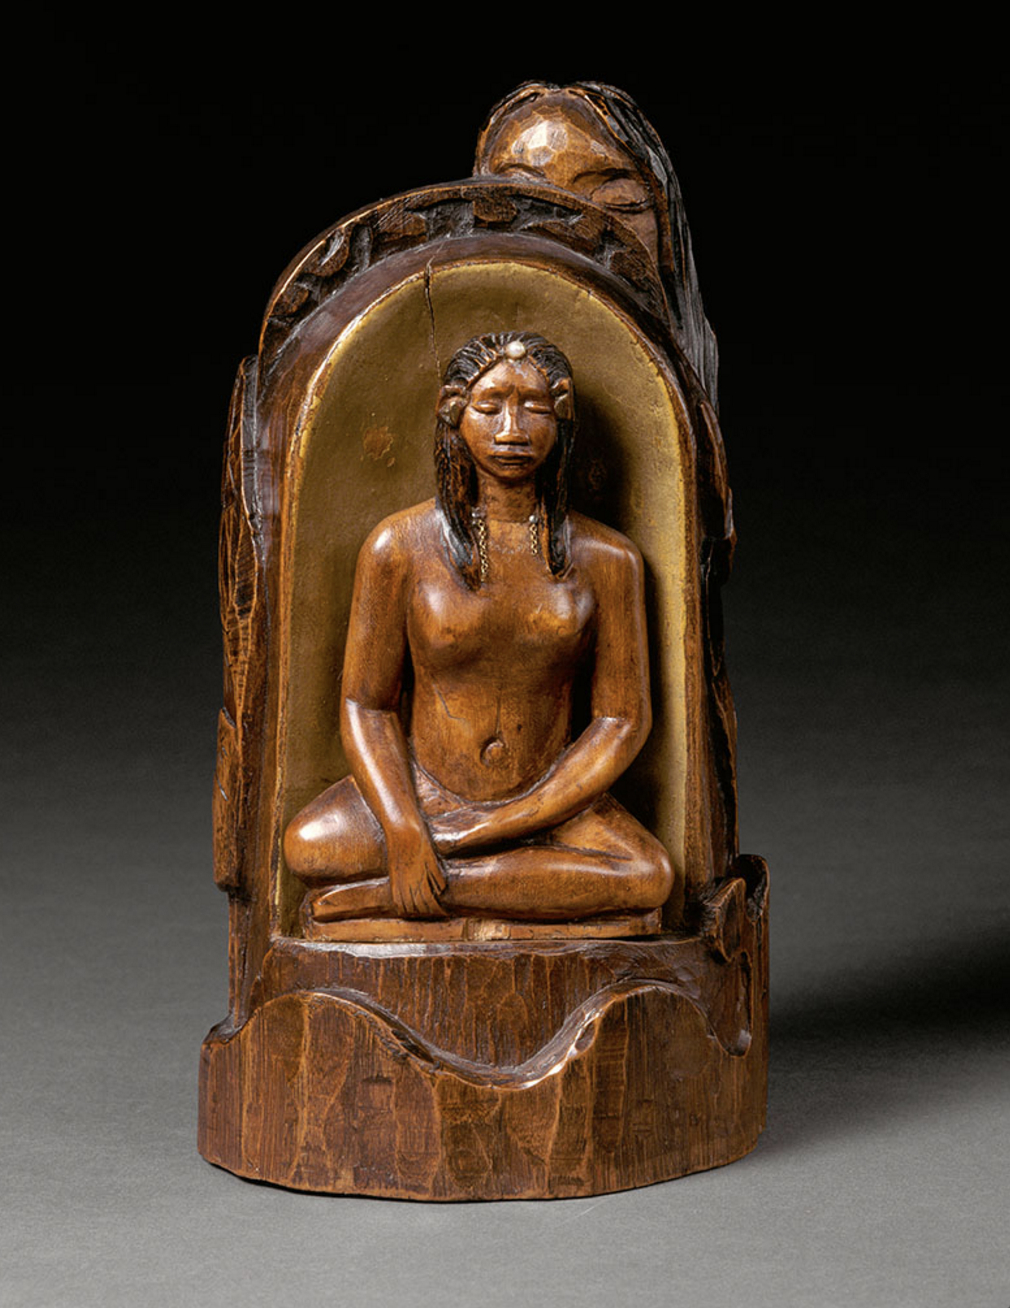 Les sculptures de Paul Gauguin seront également mises en valeur.